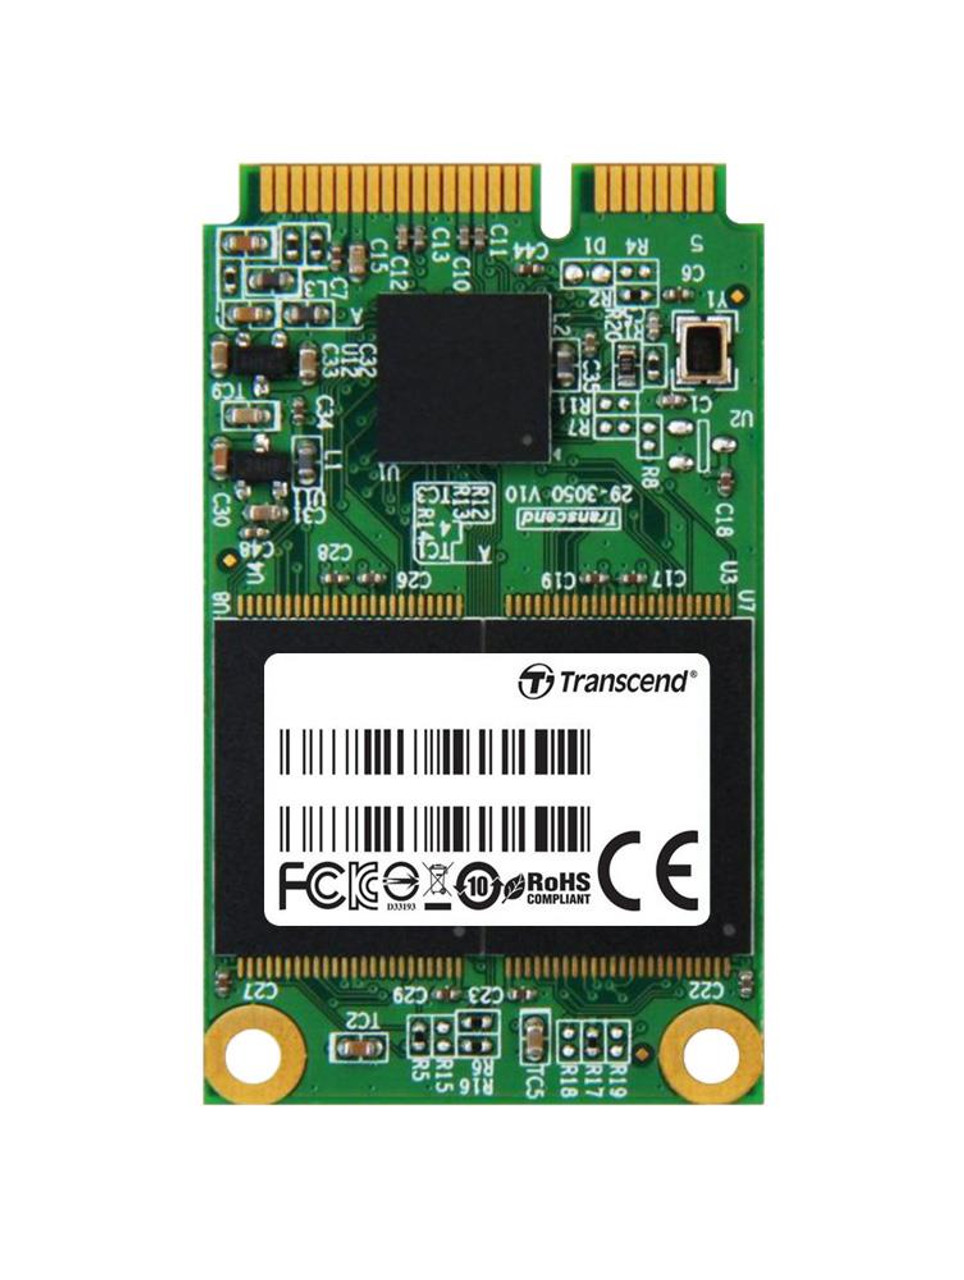 TS64GMSA300 Transcend MSA300 64GB MLC SATA 3Gbps mSATA Internal Solid State Drive (SSD)